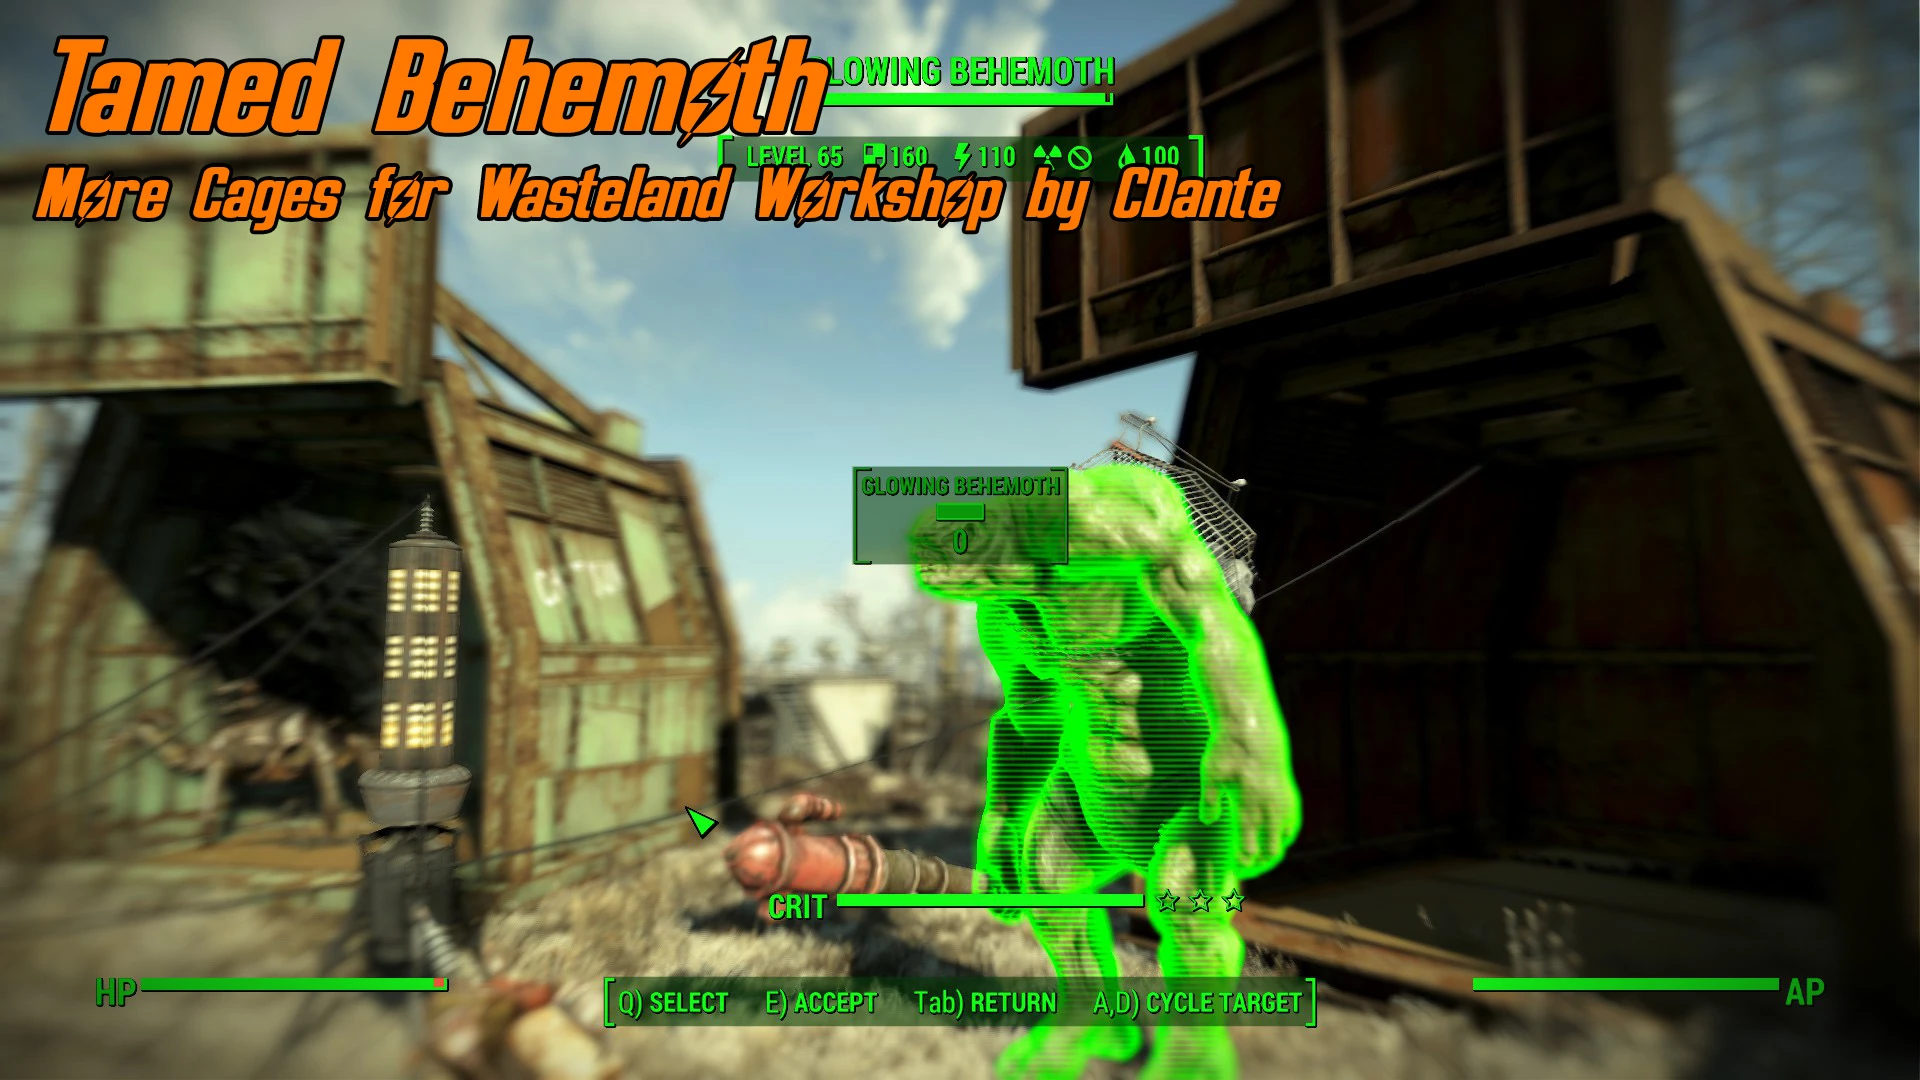 Wasteland workshop для fallout 4 фото 86